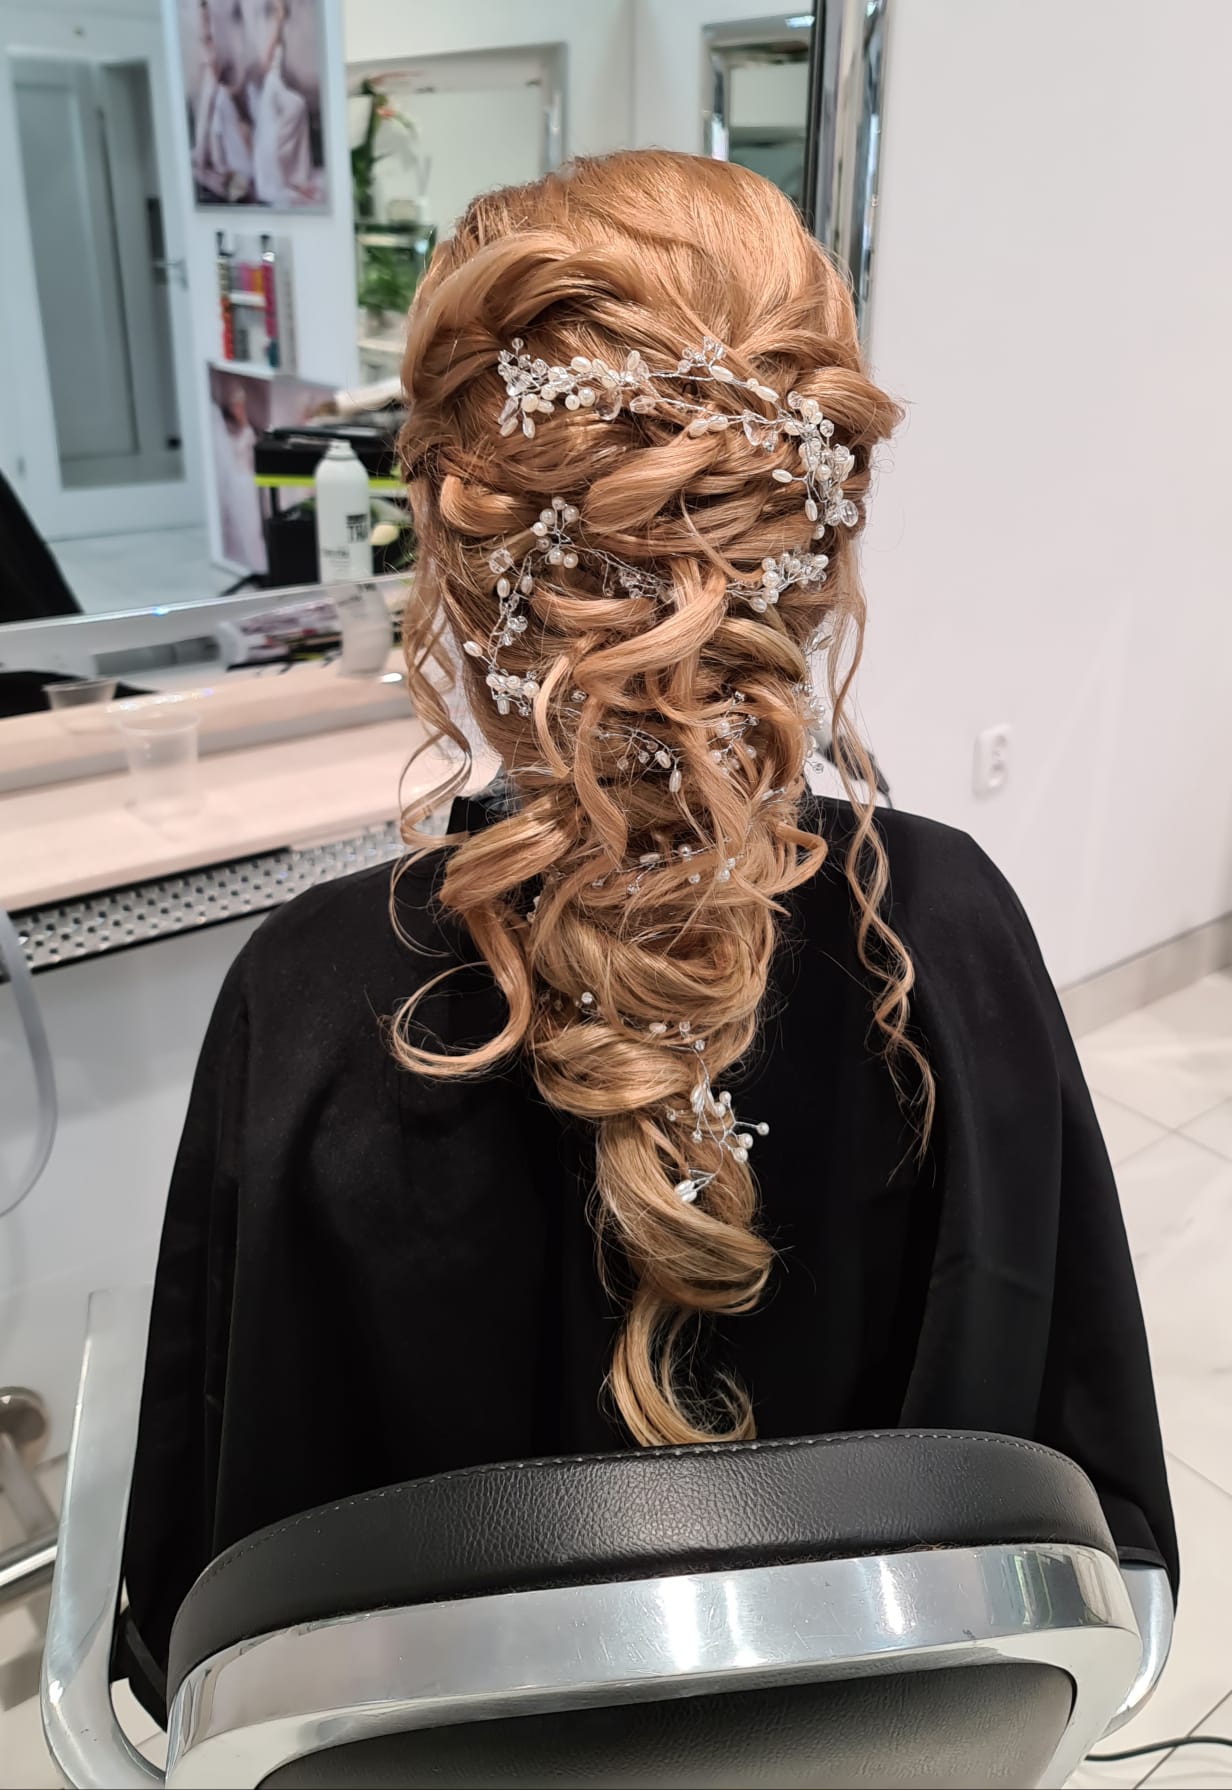 Fotografia fryzury z eleganckim upięciem, stworzonym przez Mistrza Fryzjerstwa Magdalenę Motykę, ukazująca wyjątkowy styl salonu La Coiffure w Płocku.